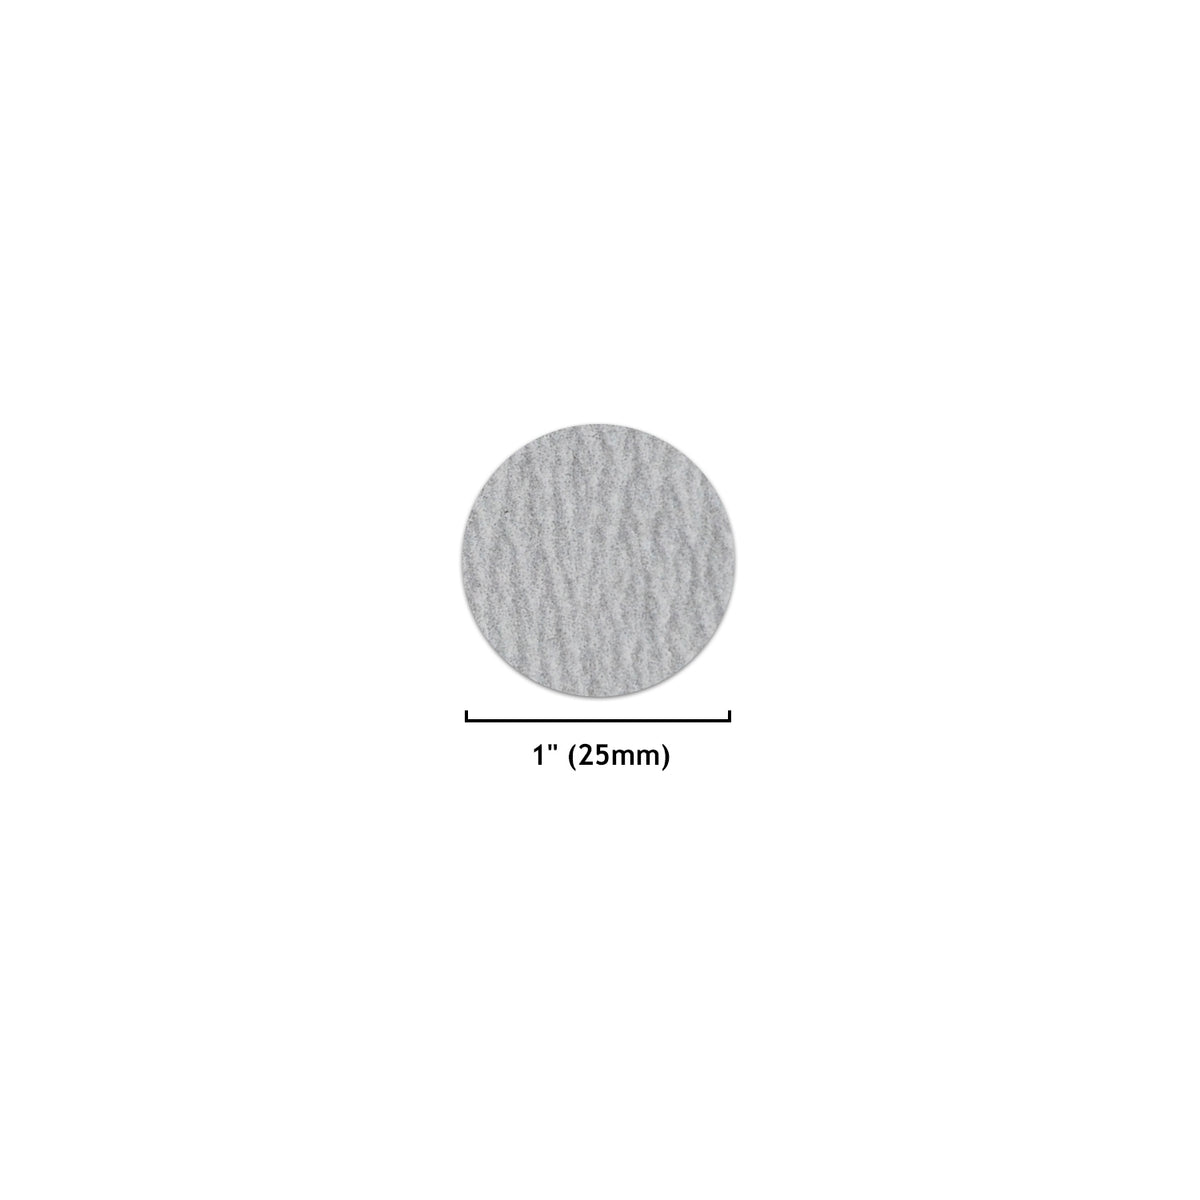 1" (25mm) White Dry Hook & Loop Sanding Discs (60-1000 Grit), 1 Disc